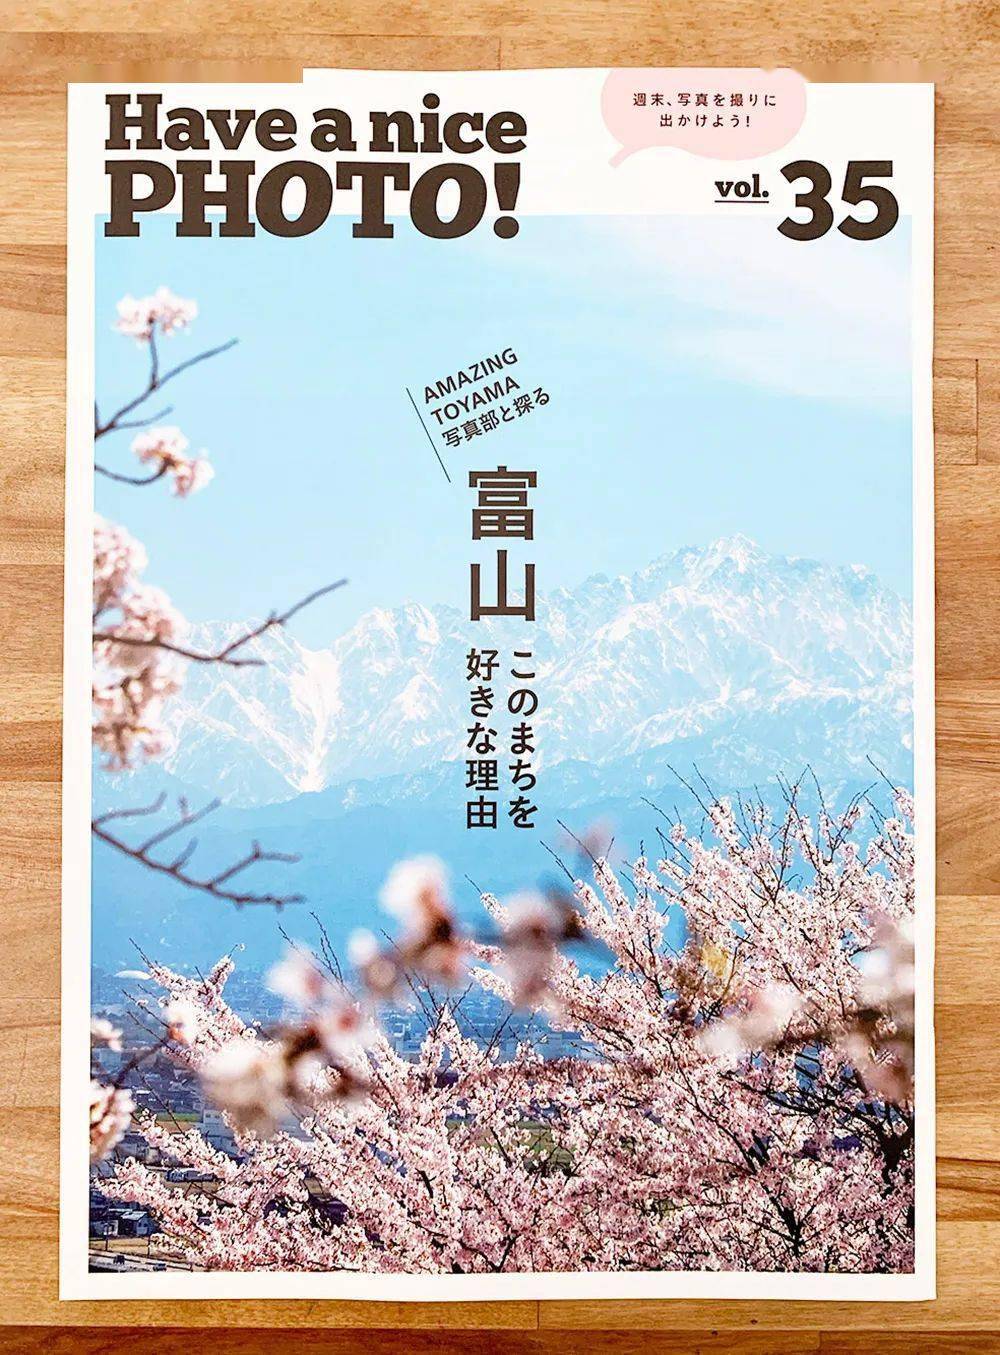 海报| 轻松惬意的日本杂志封面设计欣赏!